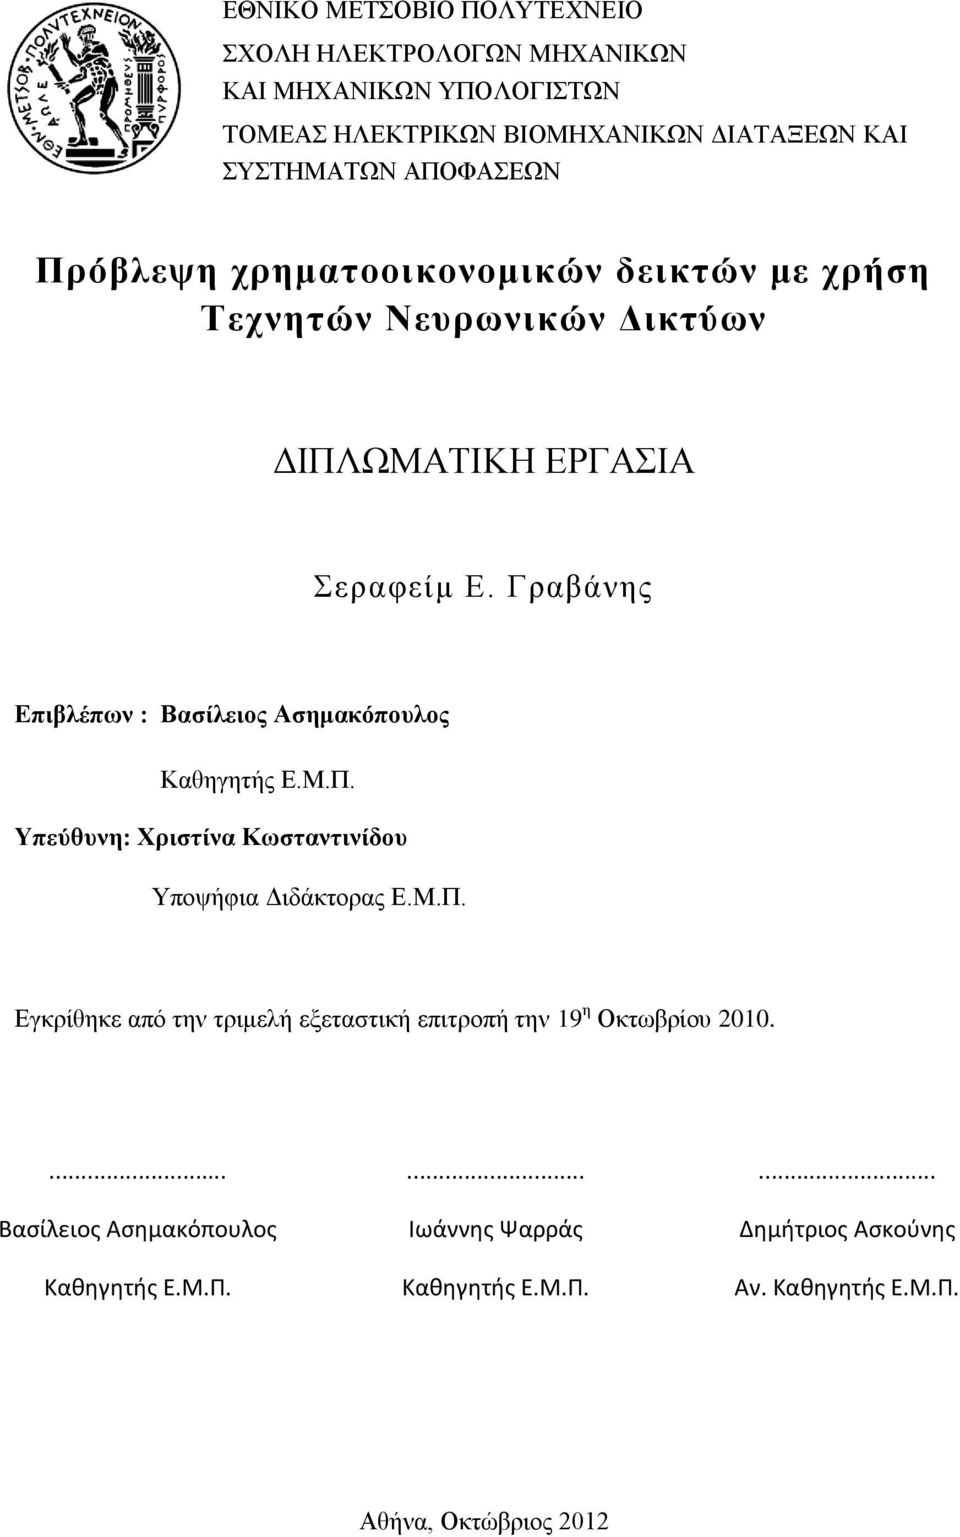 Γραβάνης Επιβλέπων : Βασίλειος Ασημακόπουλος Καθηγητής Ε.Μ.Π. Υπεύθυνη: Χριστίνα Κωσταντινίδου Υποψήφια Διδάκτορας Ε.Μ.Π. Εγκρίθηκε από την τριμελή εξεταστική επιτροπή την 19 η Οκτωβρίου 2010.